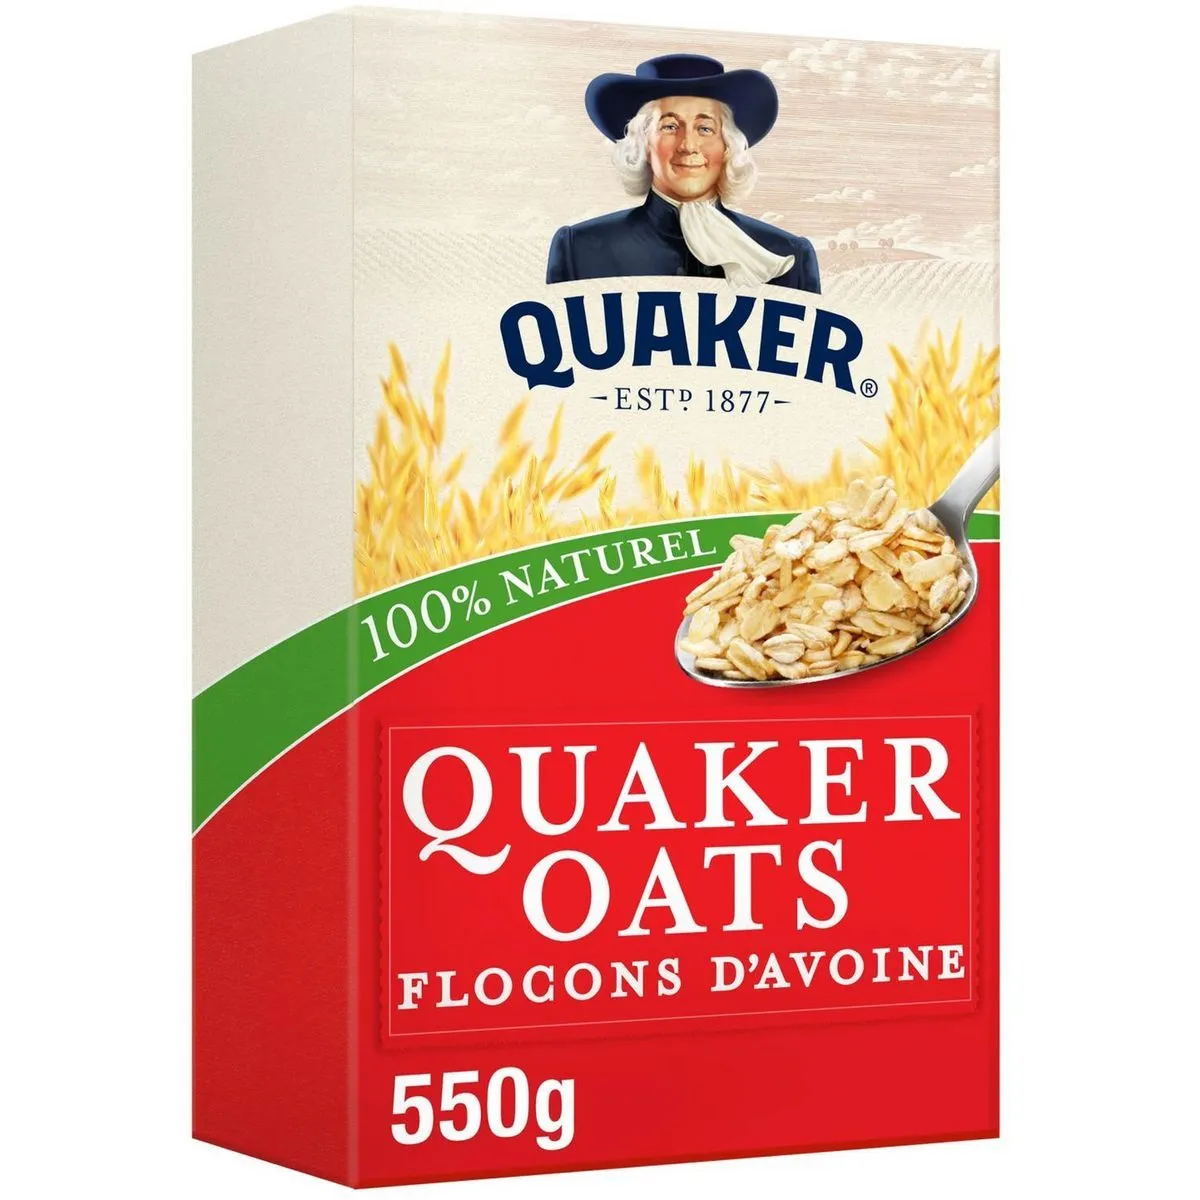 céréales quaker oats